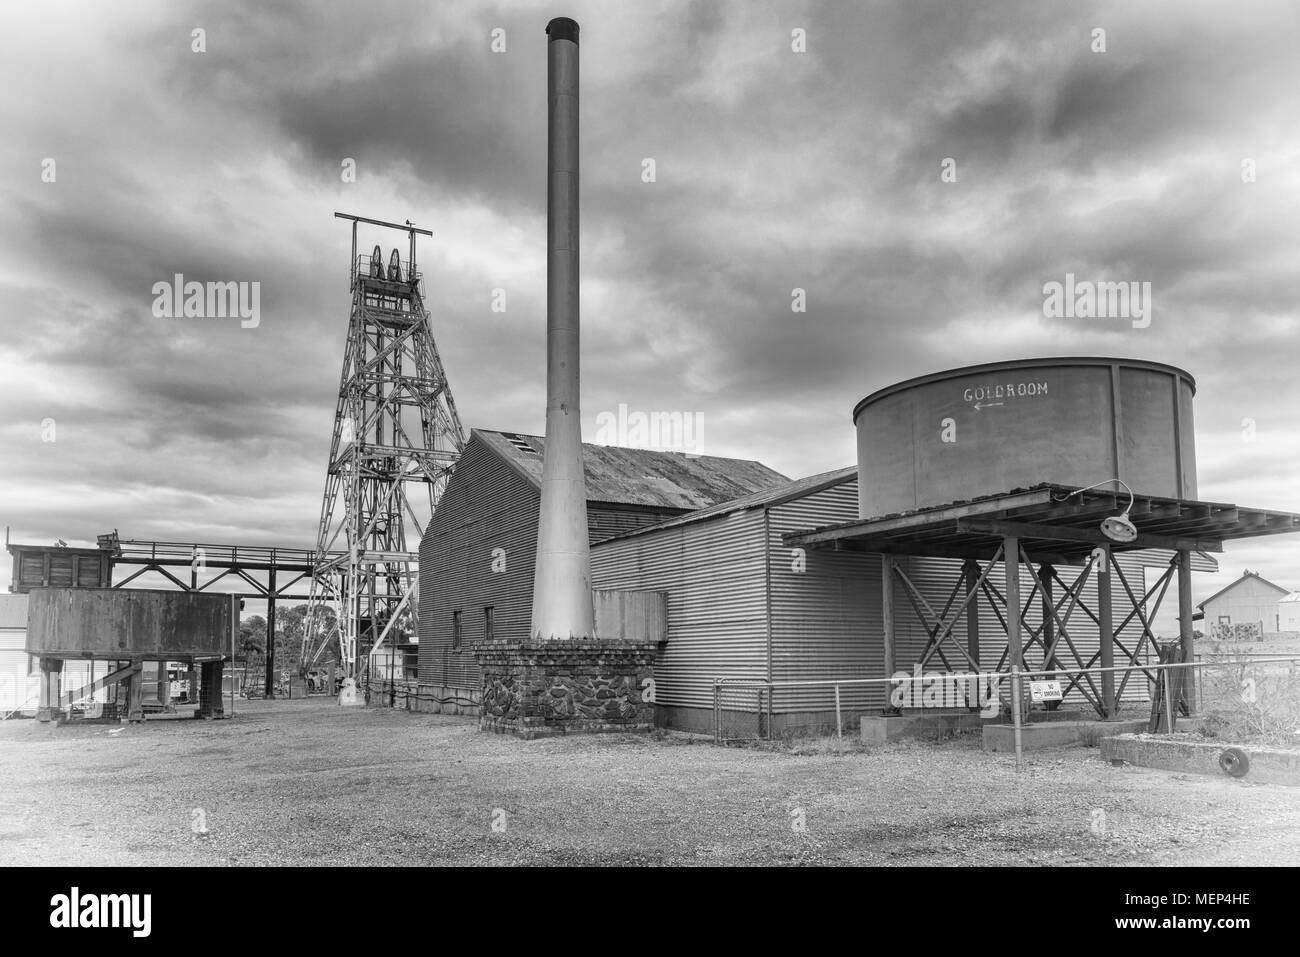 KALGOORLIE, AUSTRALIE - janvier 28, 2018 : Pit et du châssis d'une vieille mine d'or à Kalgoorlie, le 28 janvier 2018 dans l'ouest de l'Australie Banque D'Images